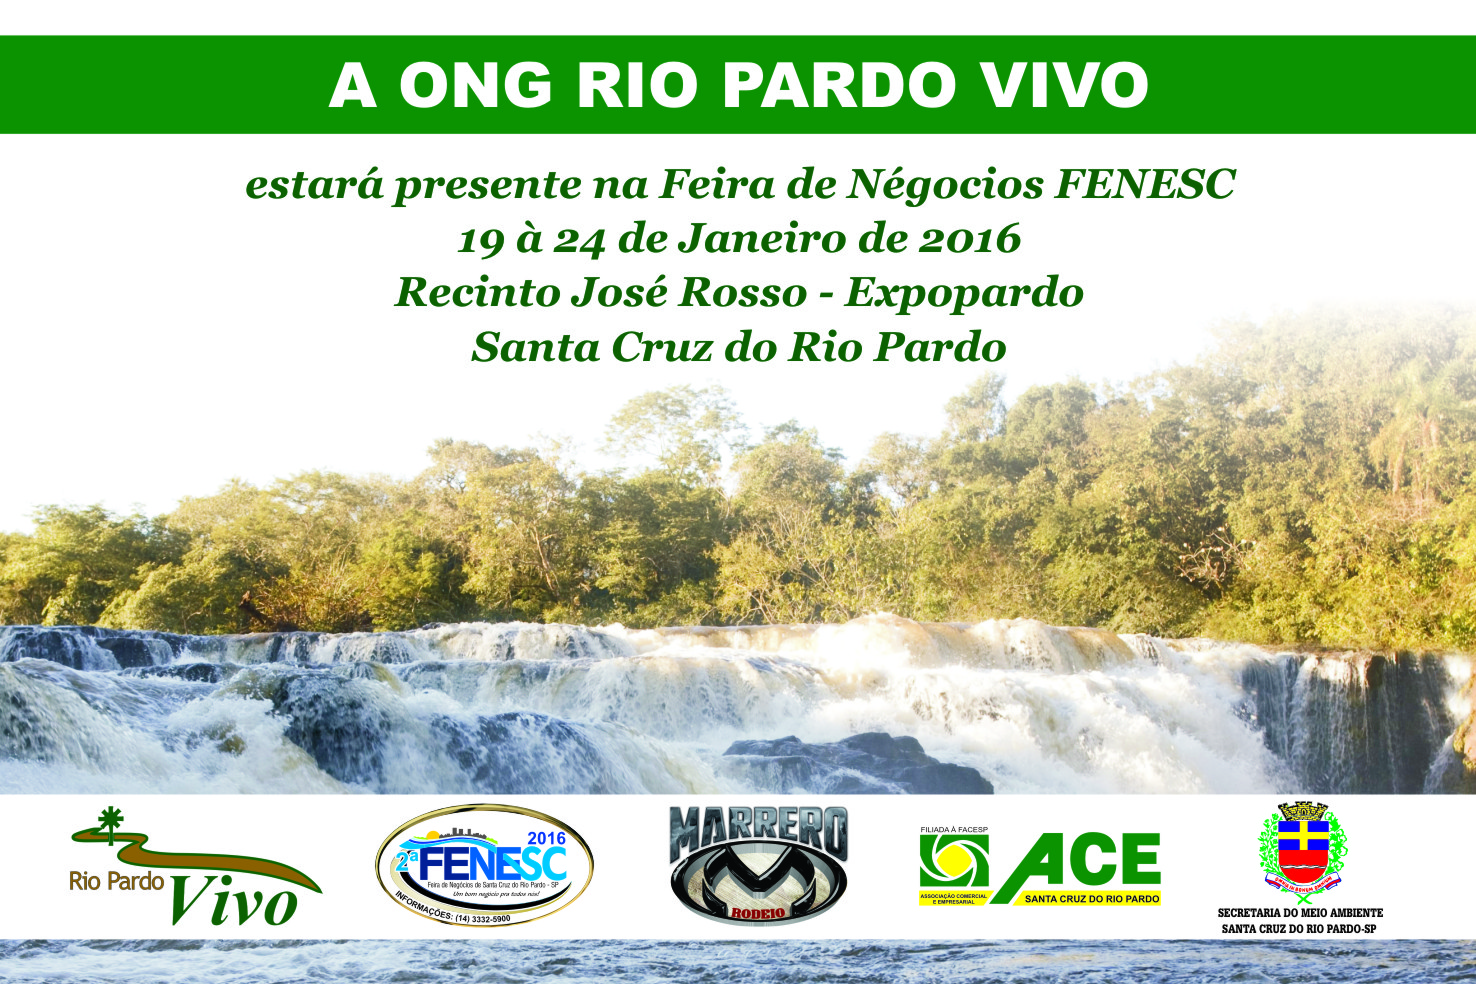 RIO_PARDO_VIVO_FENESC_2016